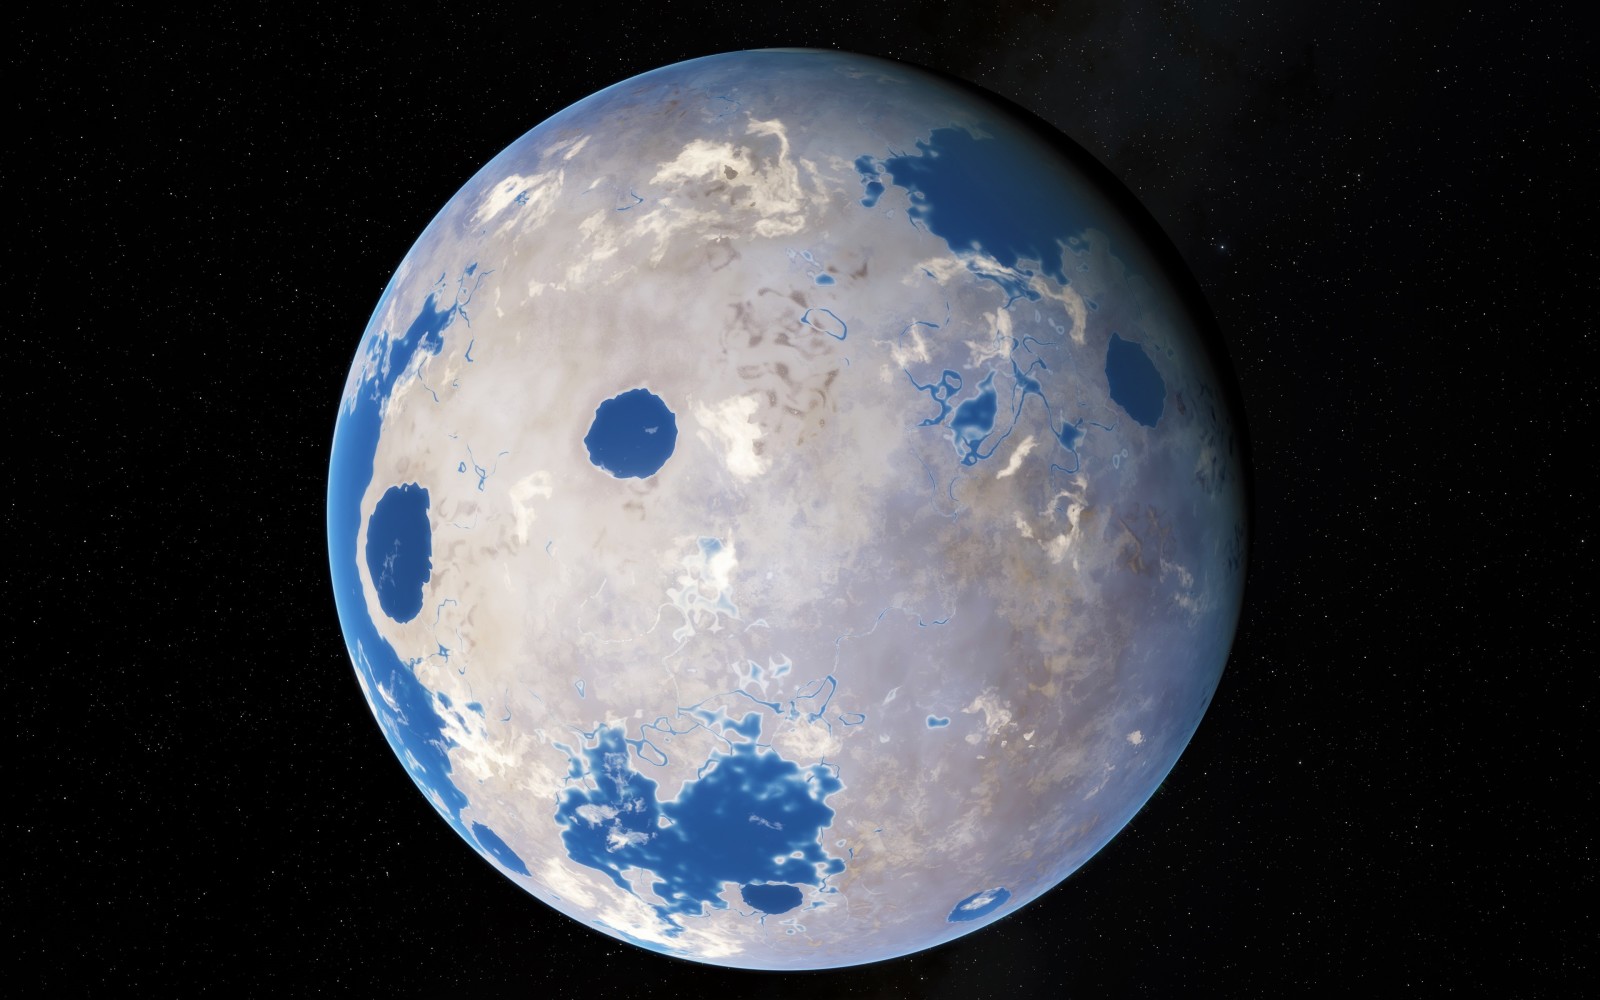 di orbit, planet ekstrasurya, katai kuning, Kepler-452 b